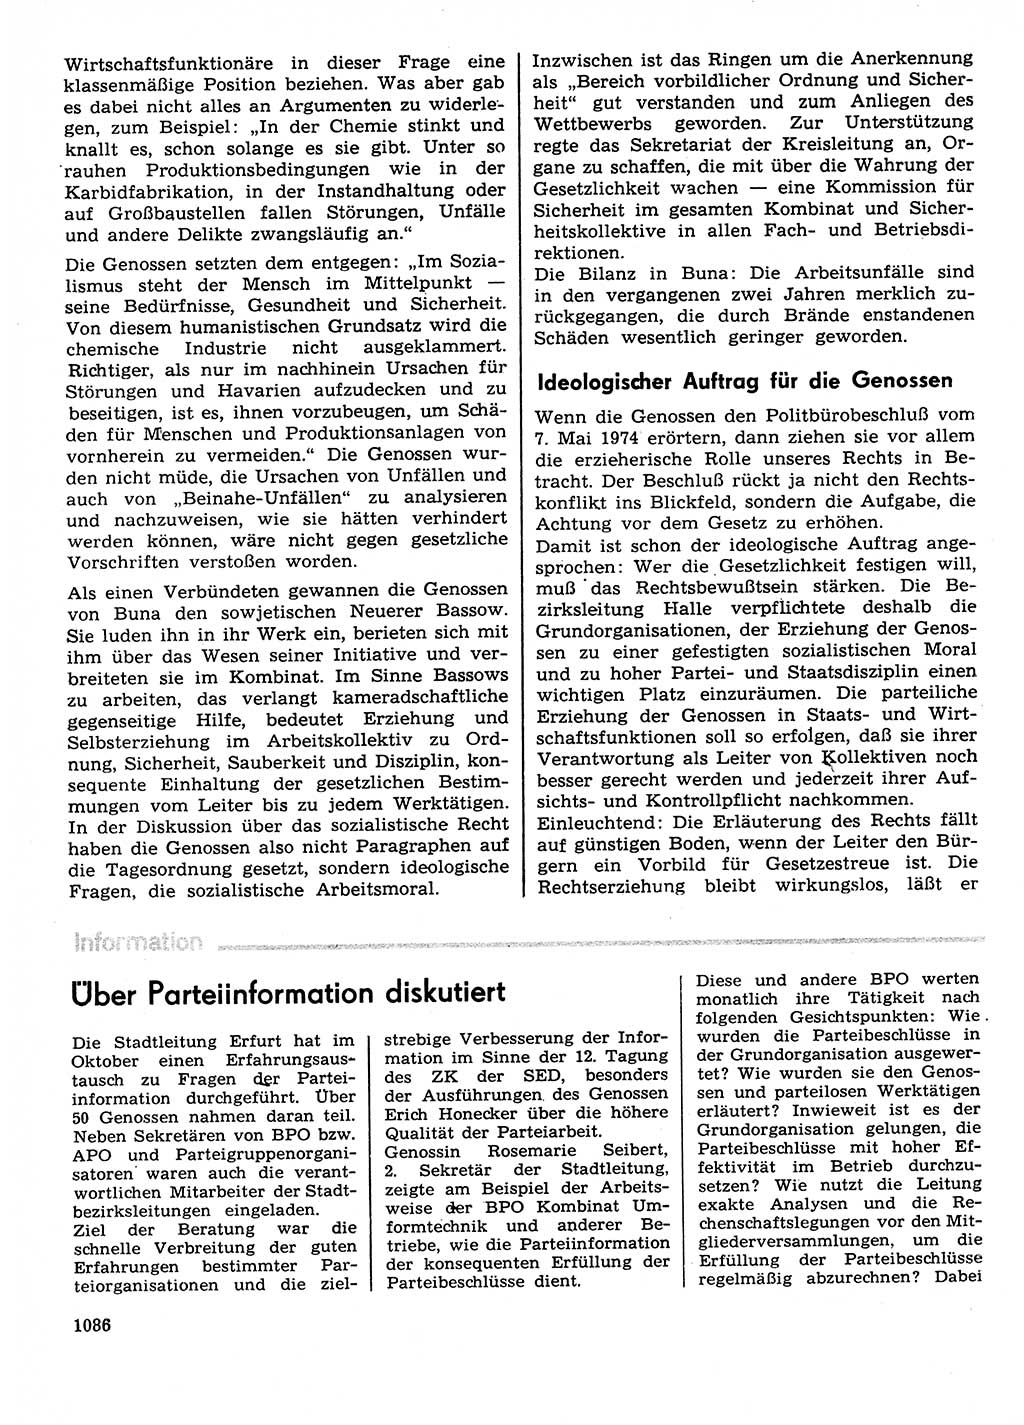 Neuer Weg (NW), Organ des Zentralkomitees (ZK) der SED (Sozialistische Einheitspartei Deutschlands) für Fragen des Parteilebens, 29. Jahrgang [Deutsche Demokratische Republik (DDR)] 1974, Seite 1086 (NW ZK SED DDR 1974, S. 1086)